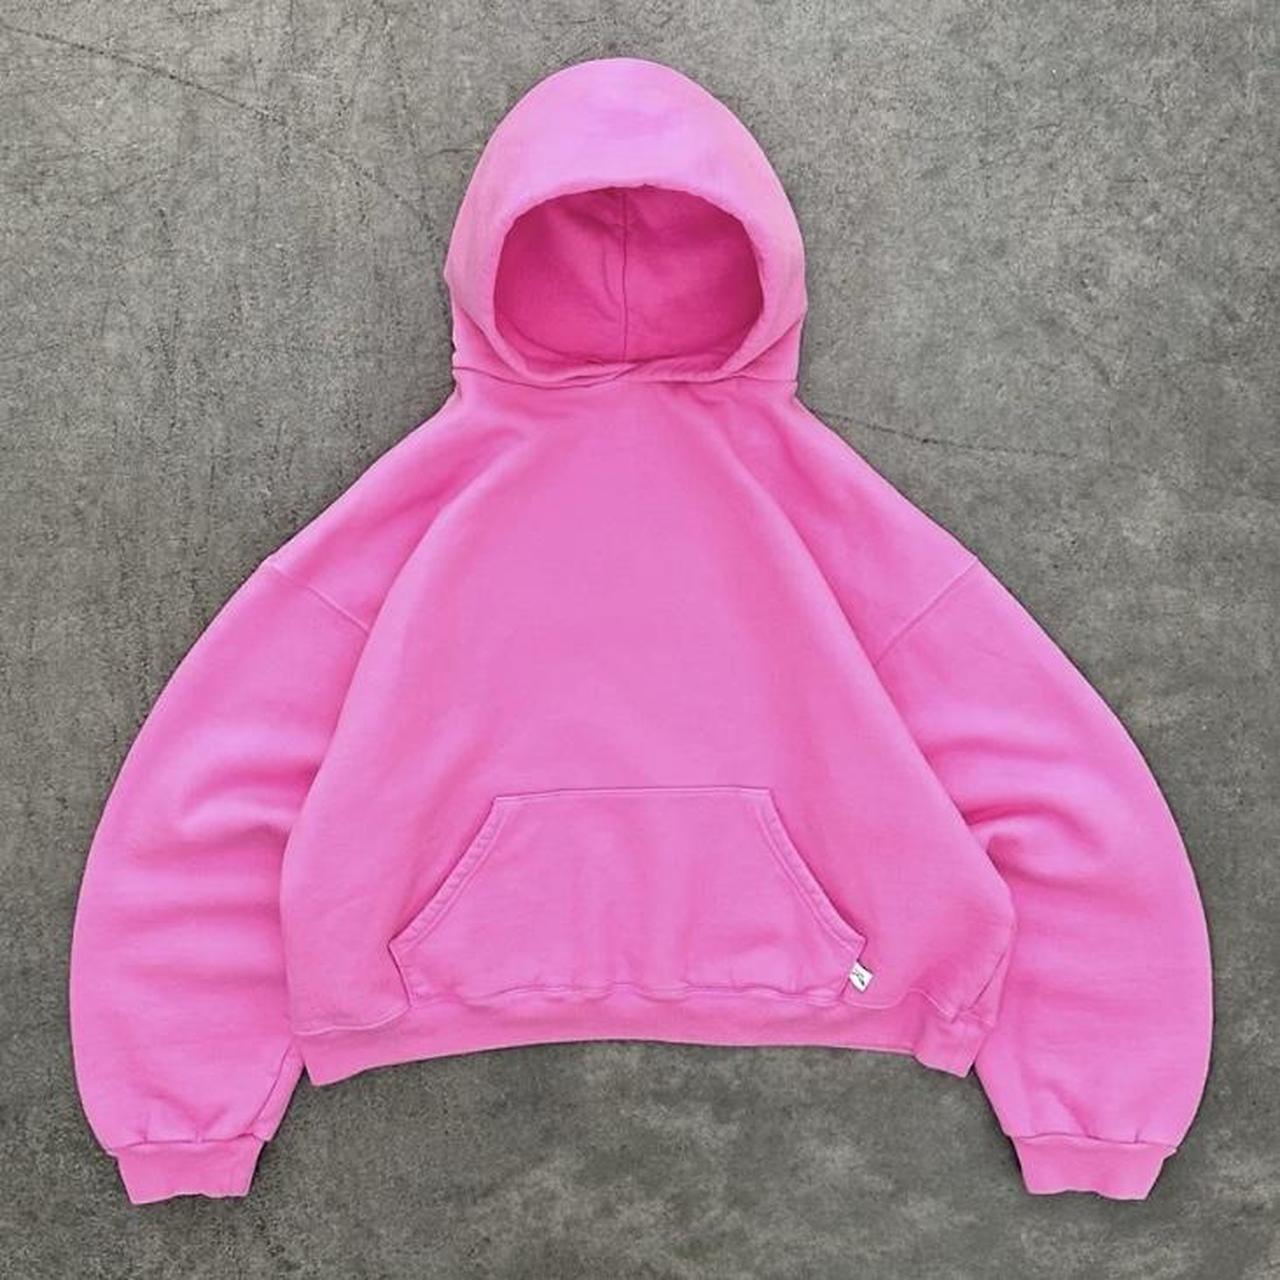 new pink akimbo club hoodie • worn once •... - Depop